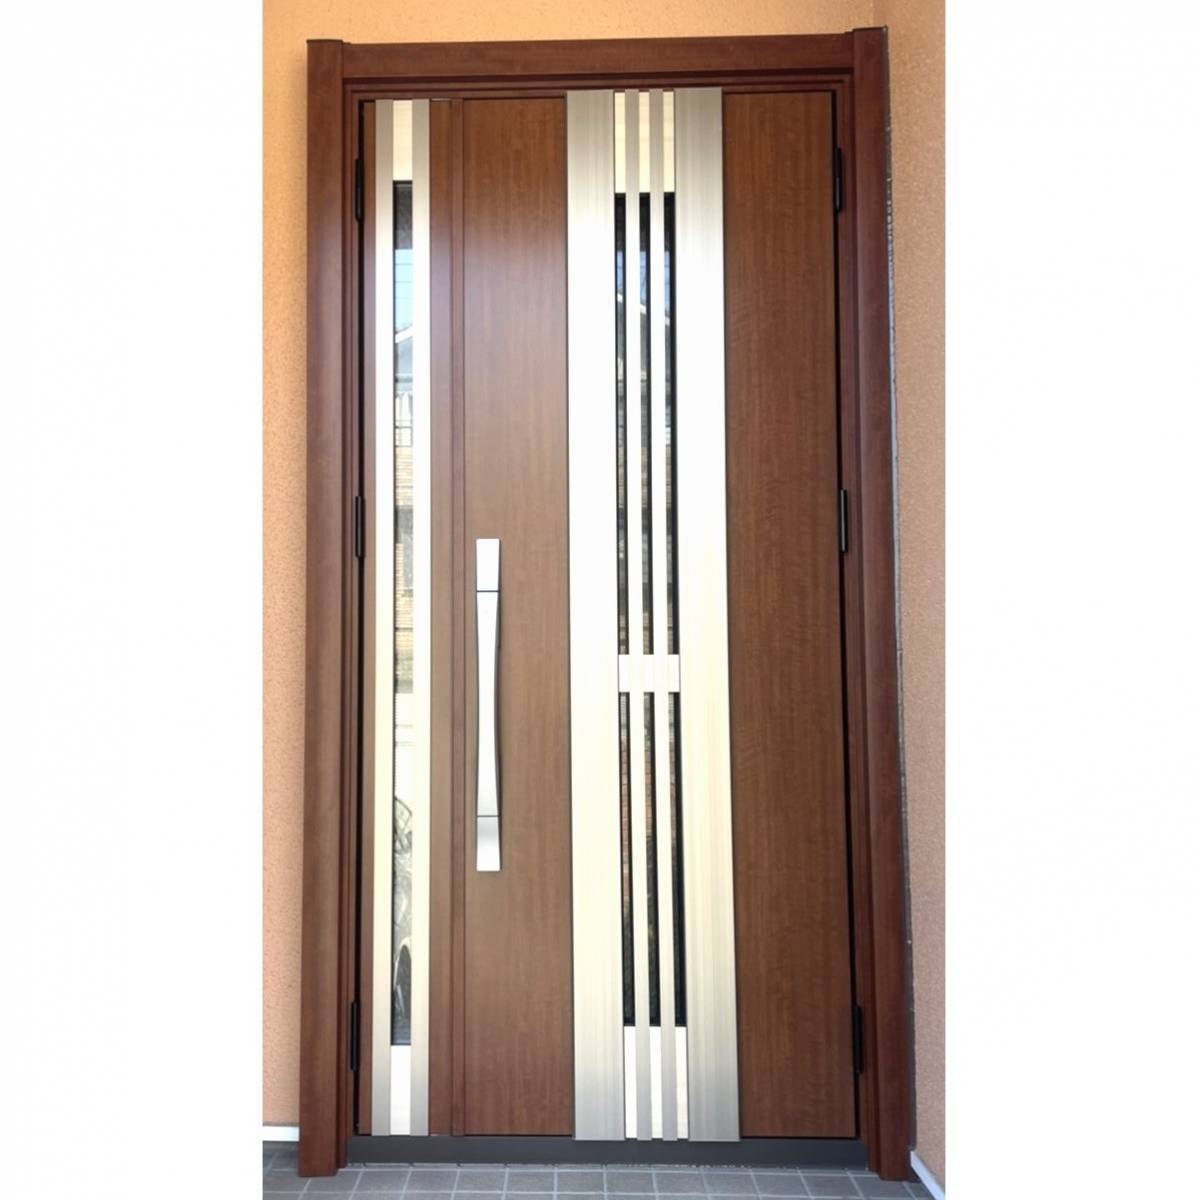 窓工房テラムラの玄関ドア交換で断熱と換気がしたいの施工後の写真1